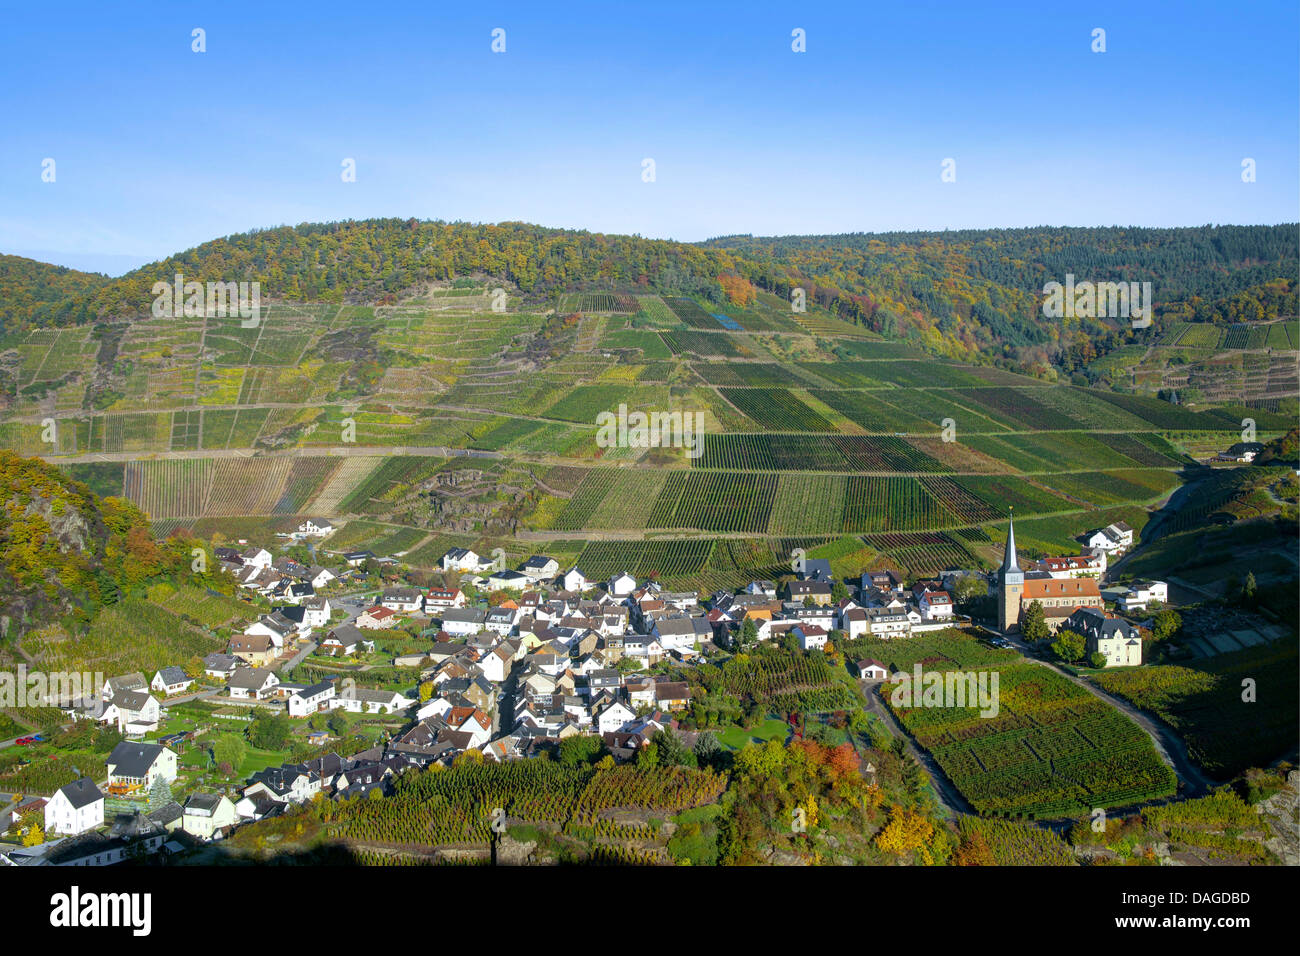 Les vignobles dans la vallée de l'Ahr, vue sur Mayschoss en automne, l'Allemagne, l'Rheiland-Pfalz, Ahrgebirge Banque D'Images